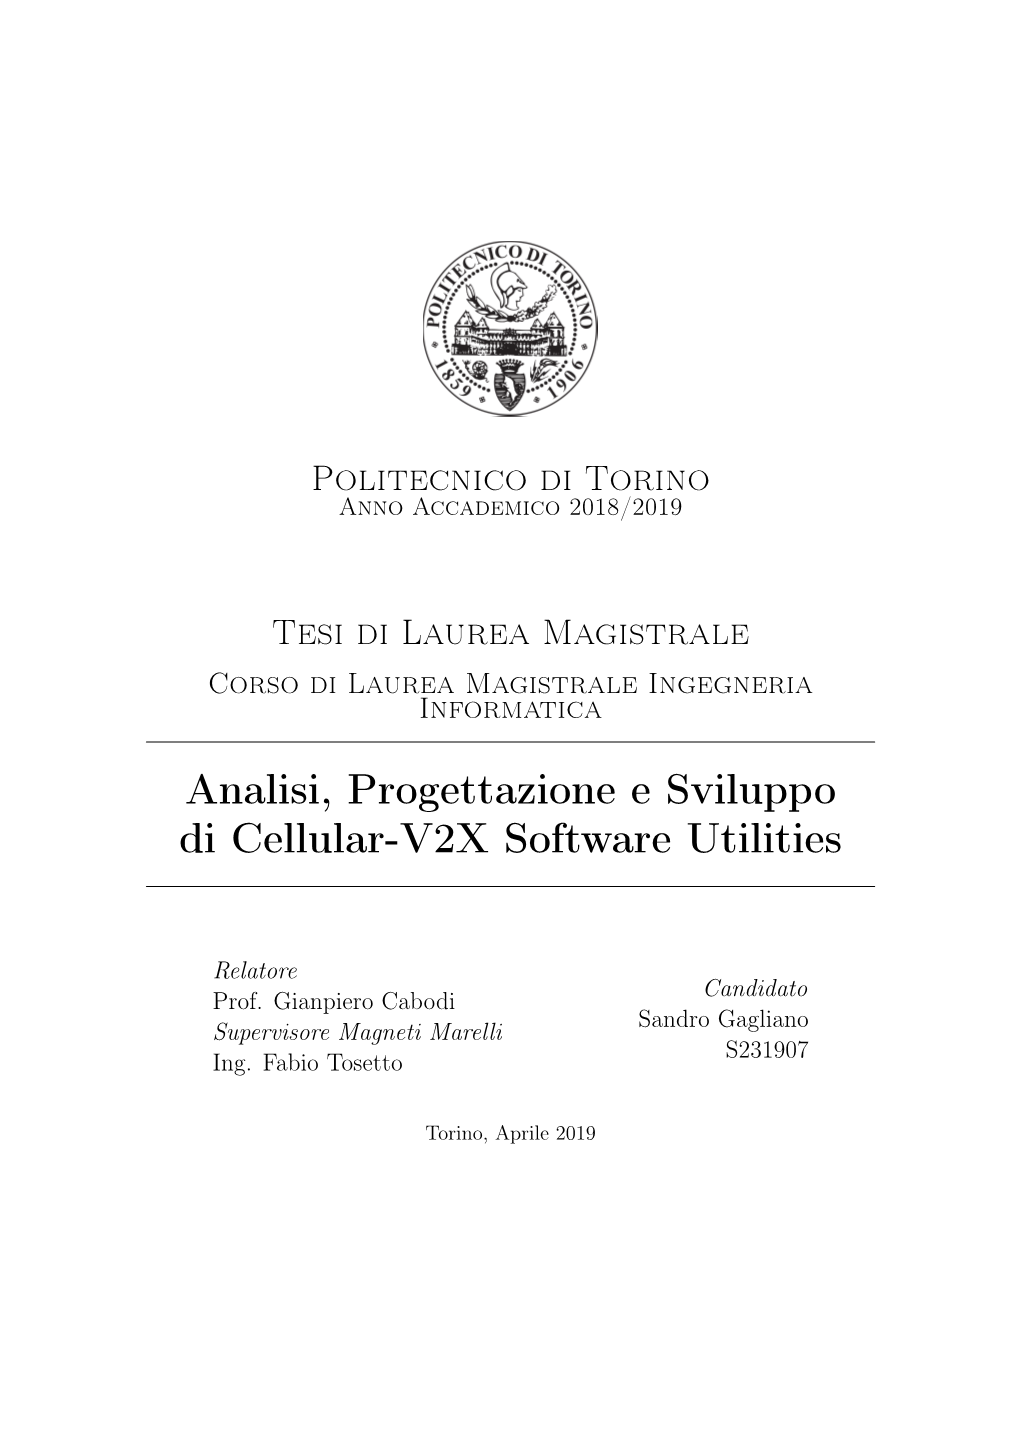 Analisi, Progettazione E Sviluppo Di Cellular-V2X Software Utilities